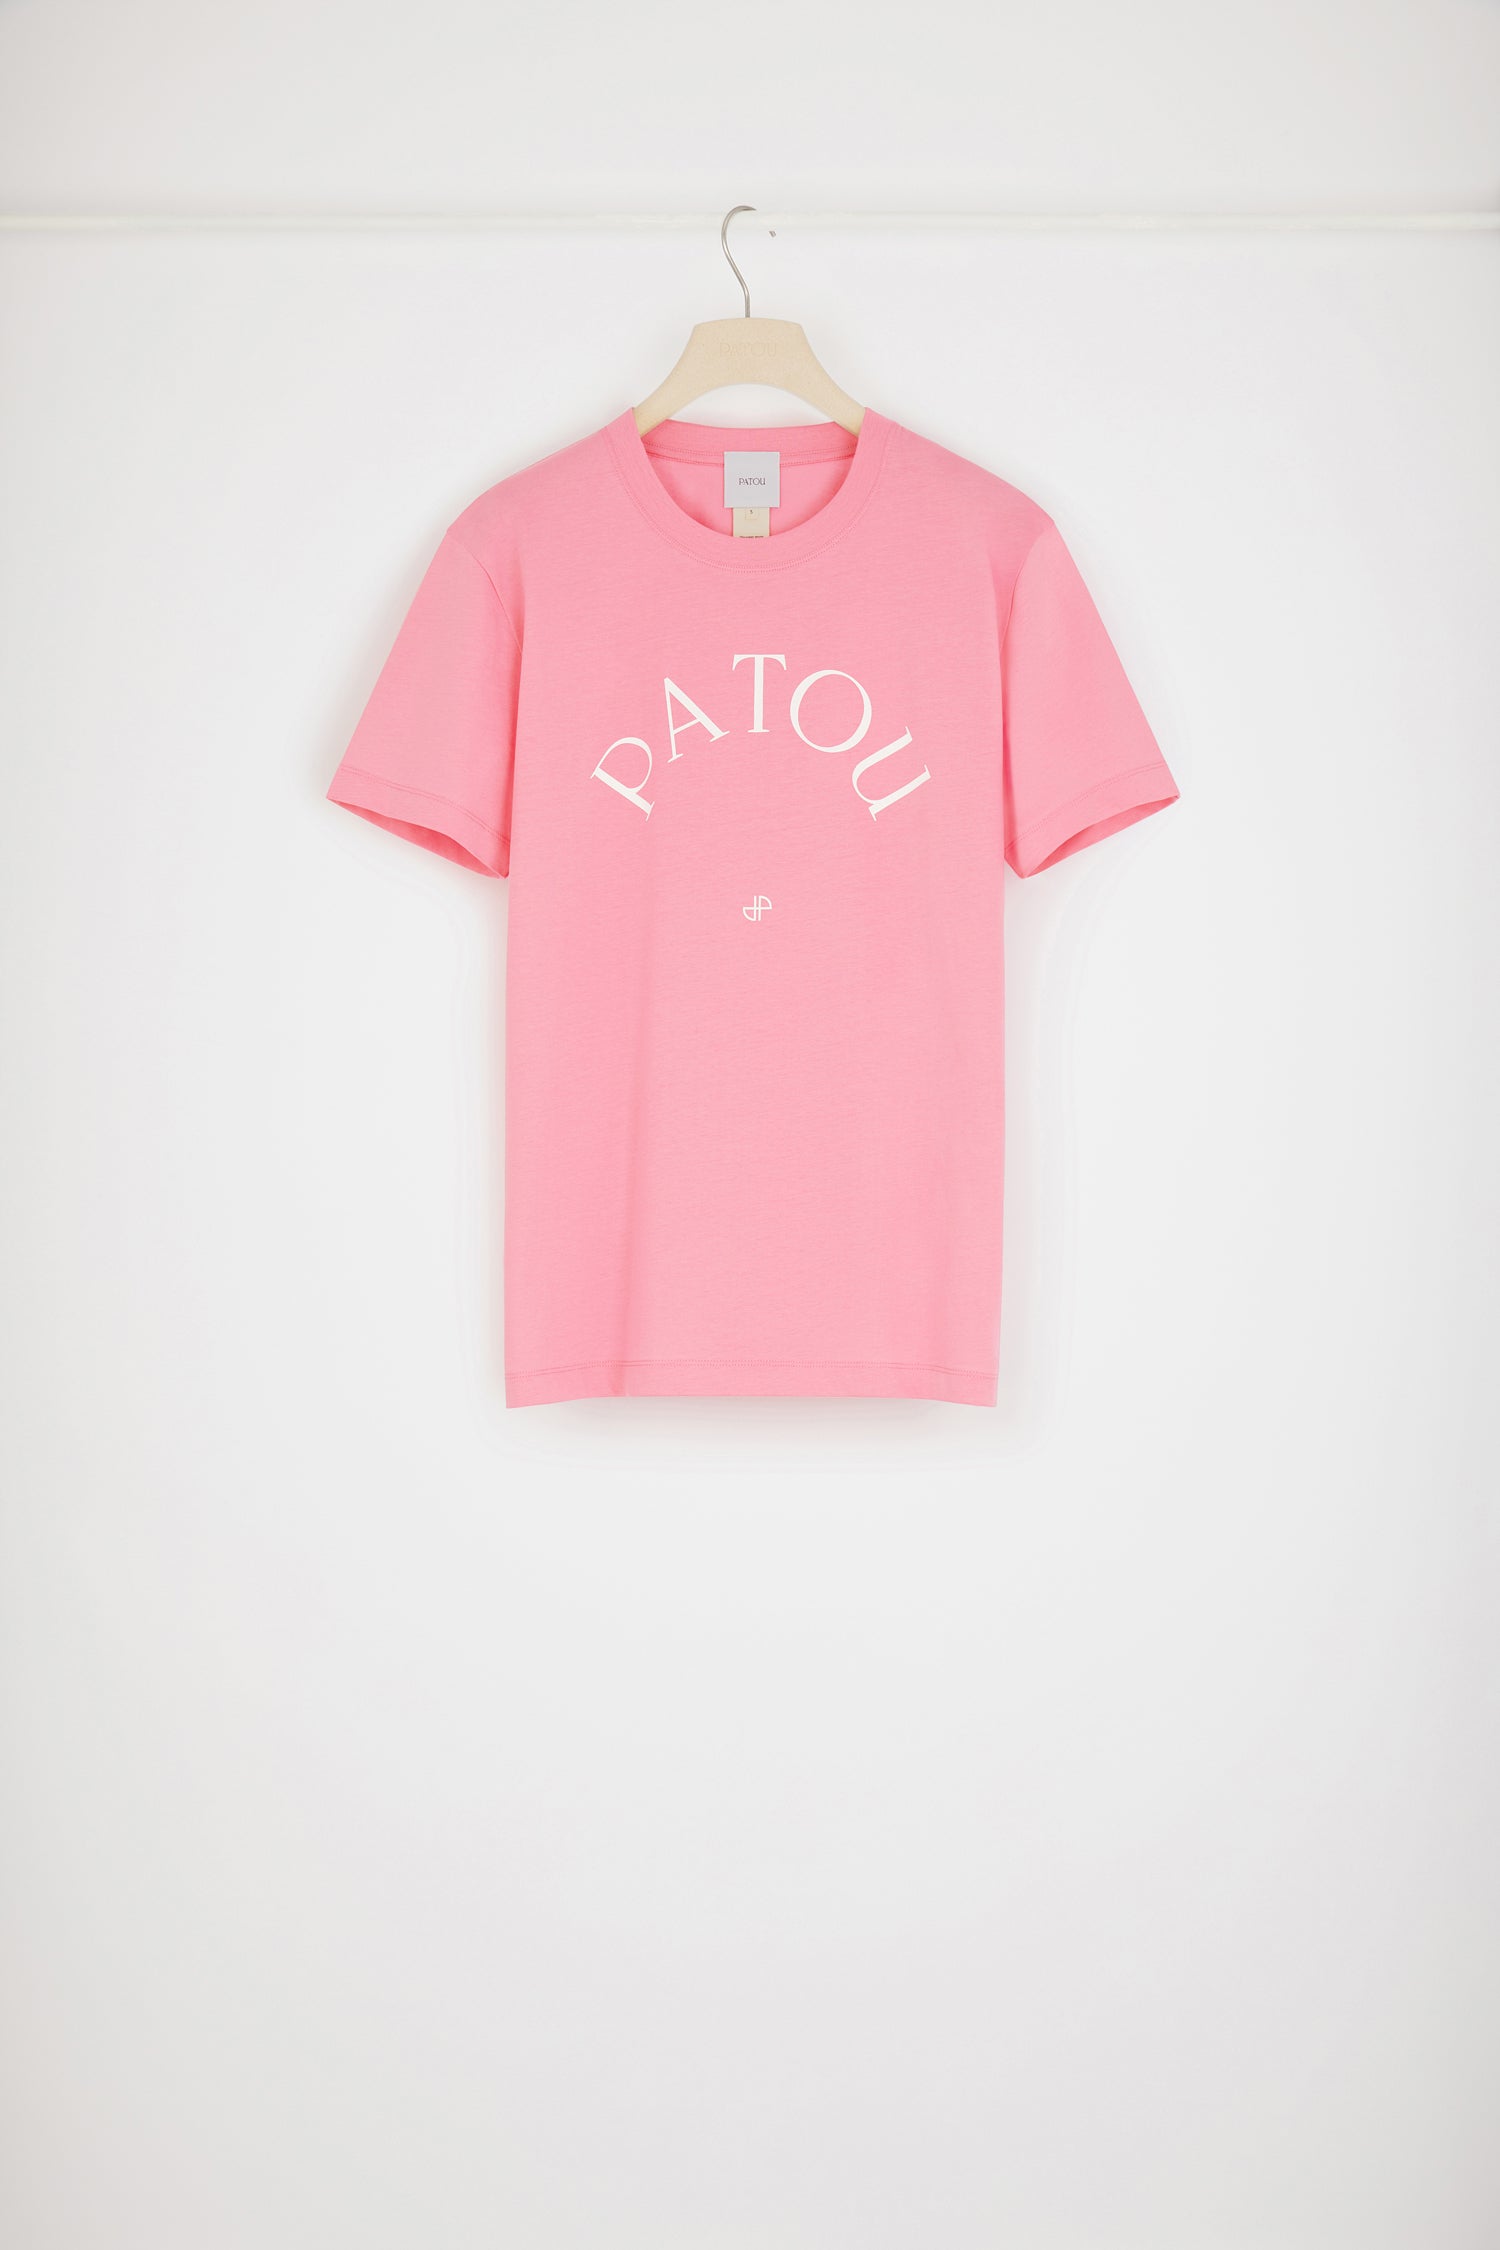 新品】PATOU 半袖 Tシャツ ロゴ ピンク Sサイズ-